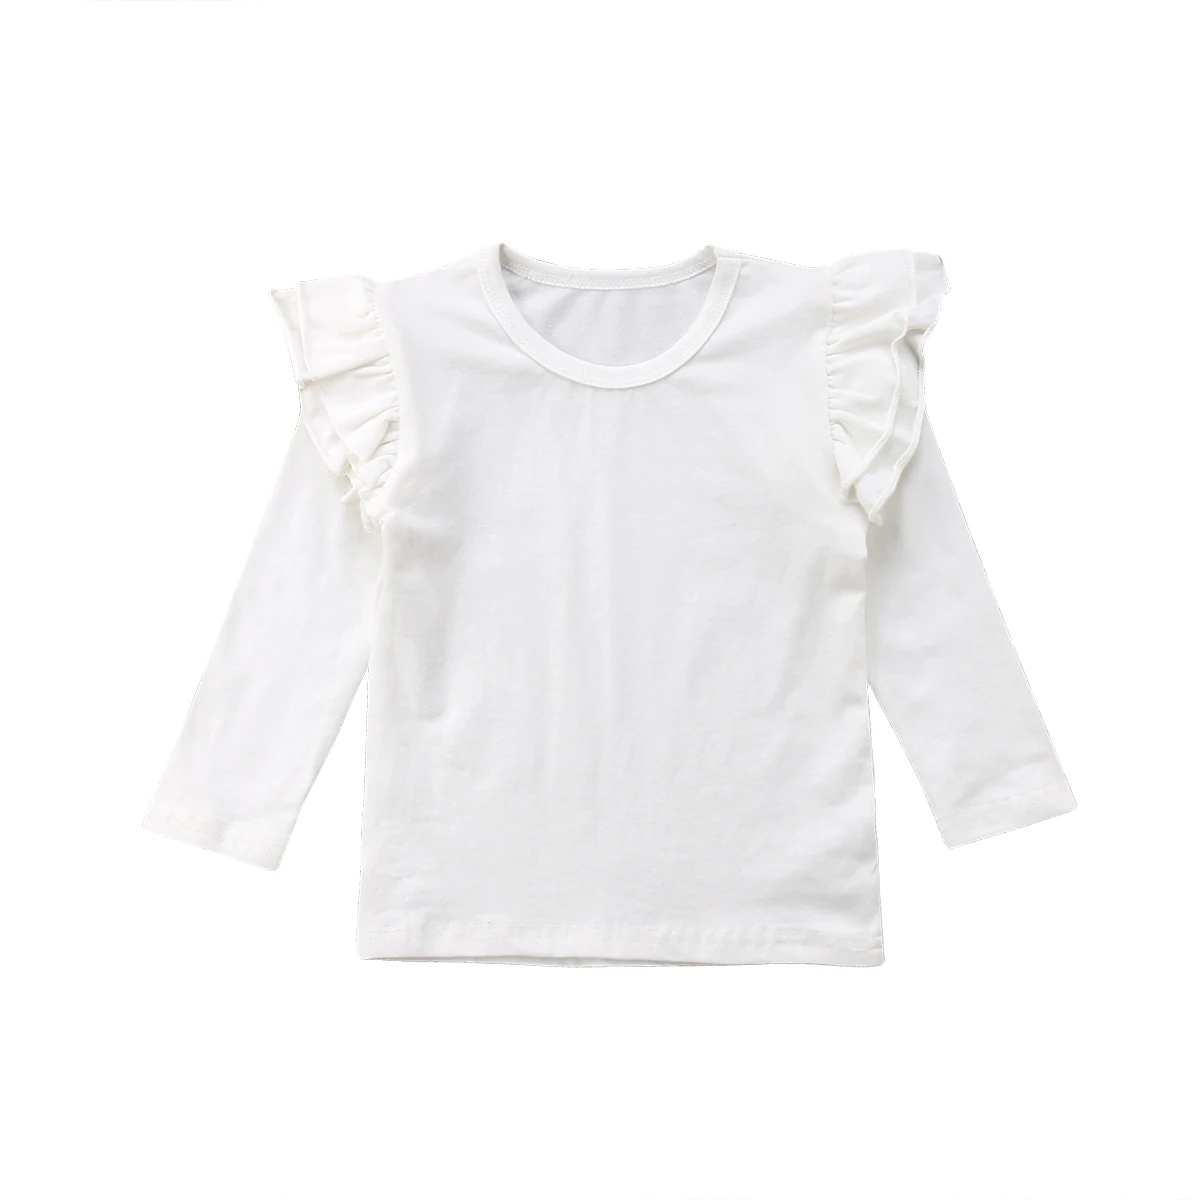 Повседневные однотонные топы с длинными рукавами для маленьких девочек, футболка, хлопковая одежда, Милая футболка с оборками - Цвет: Белый